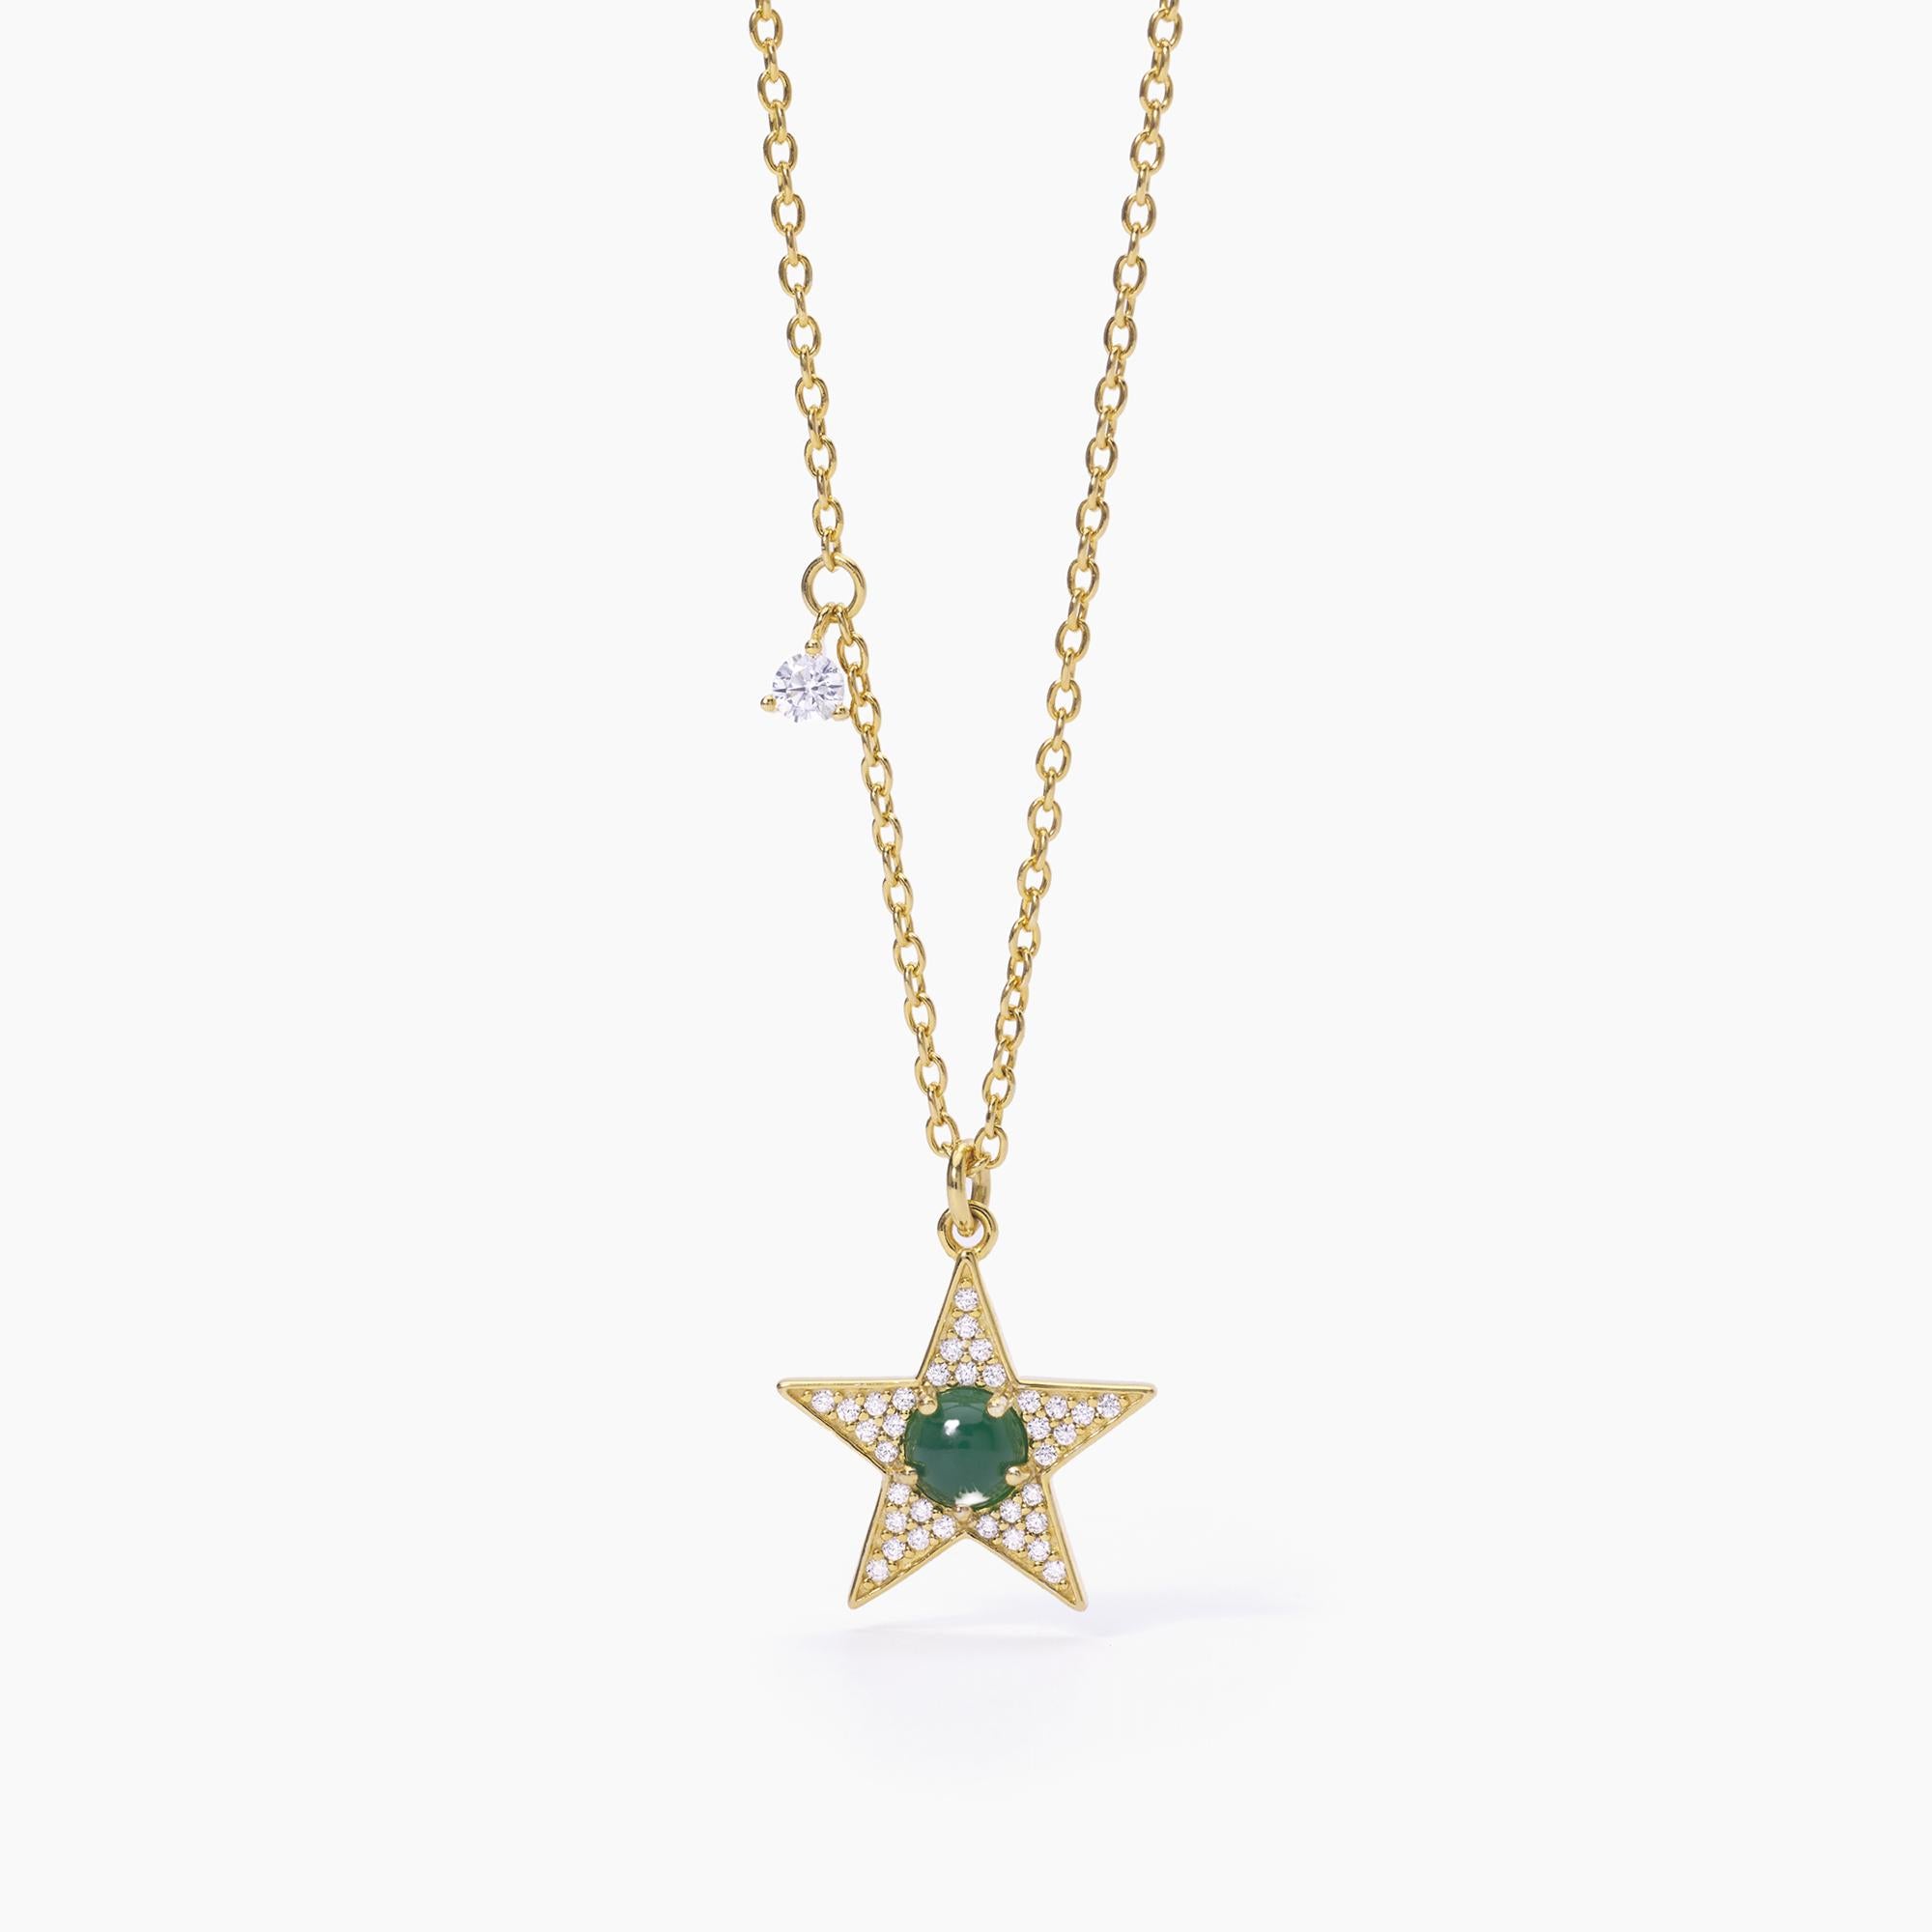 Mabina Donna - Girocollo stella dorato e agata verde STARLET - 553514